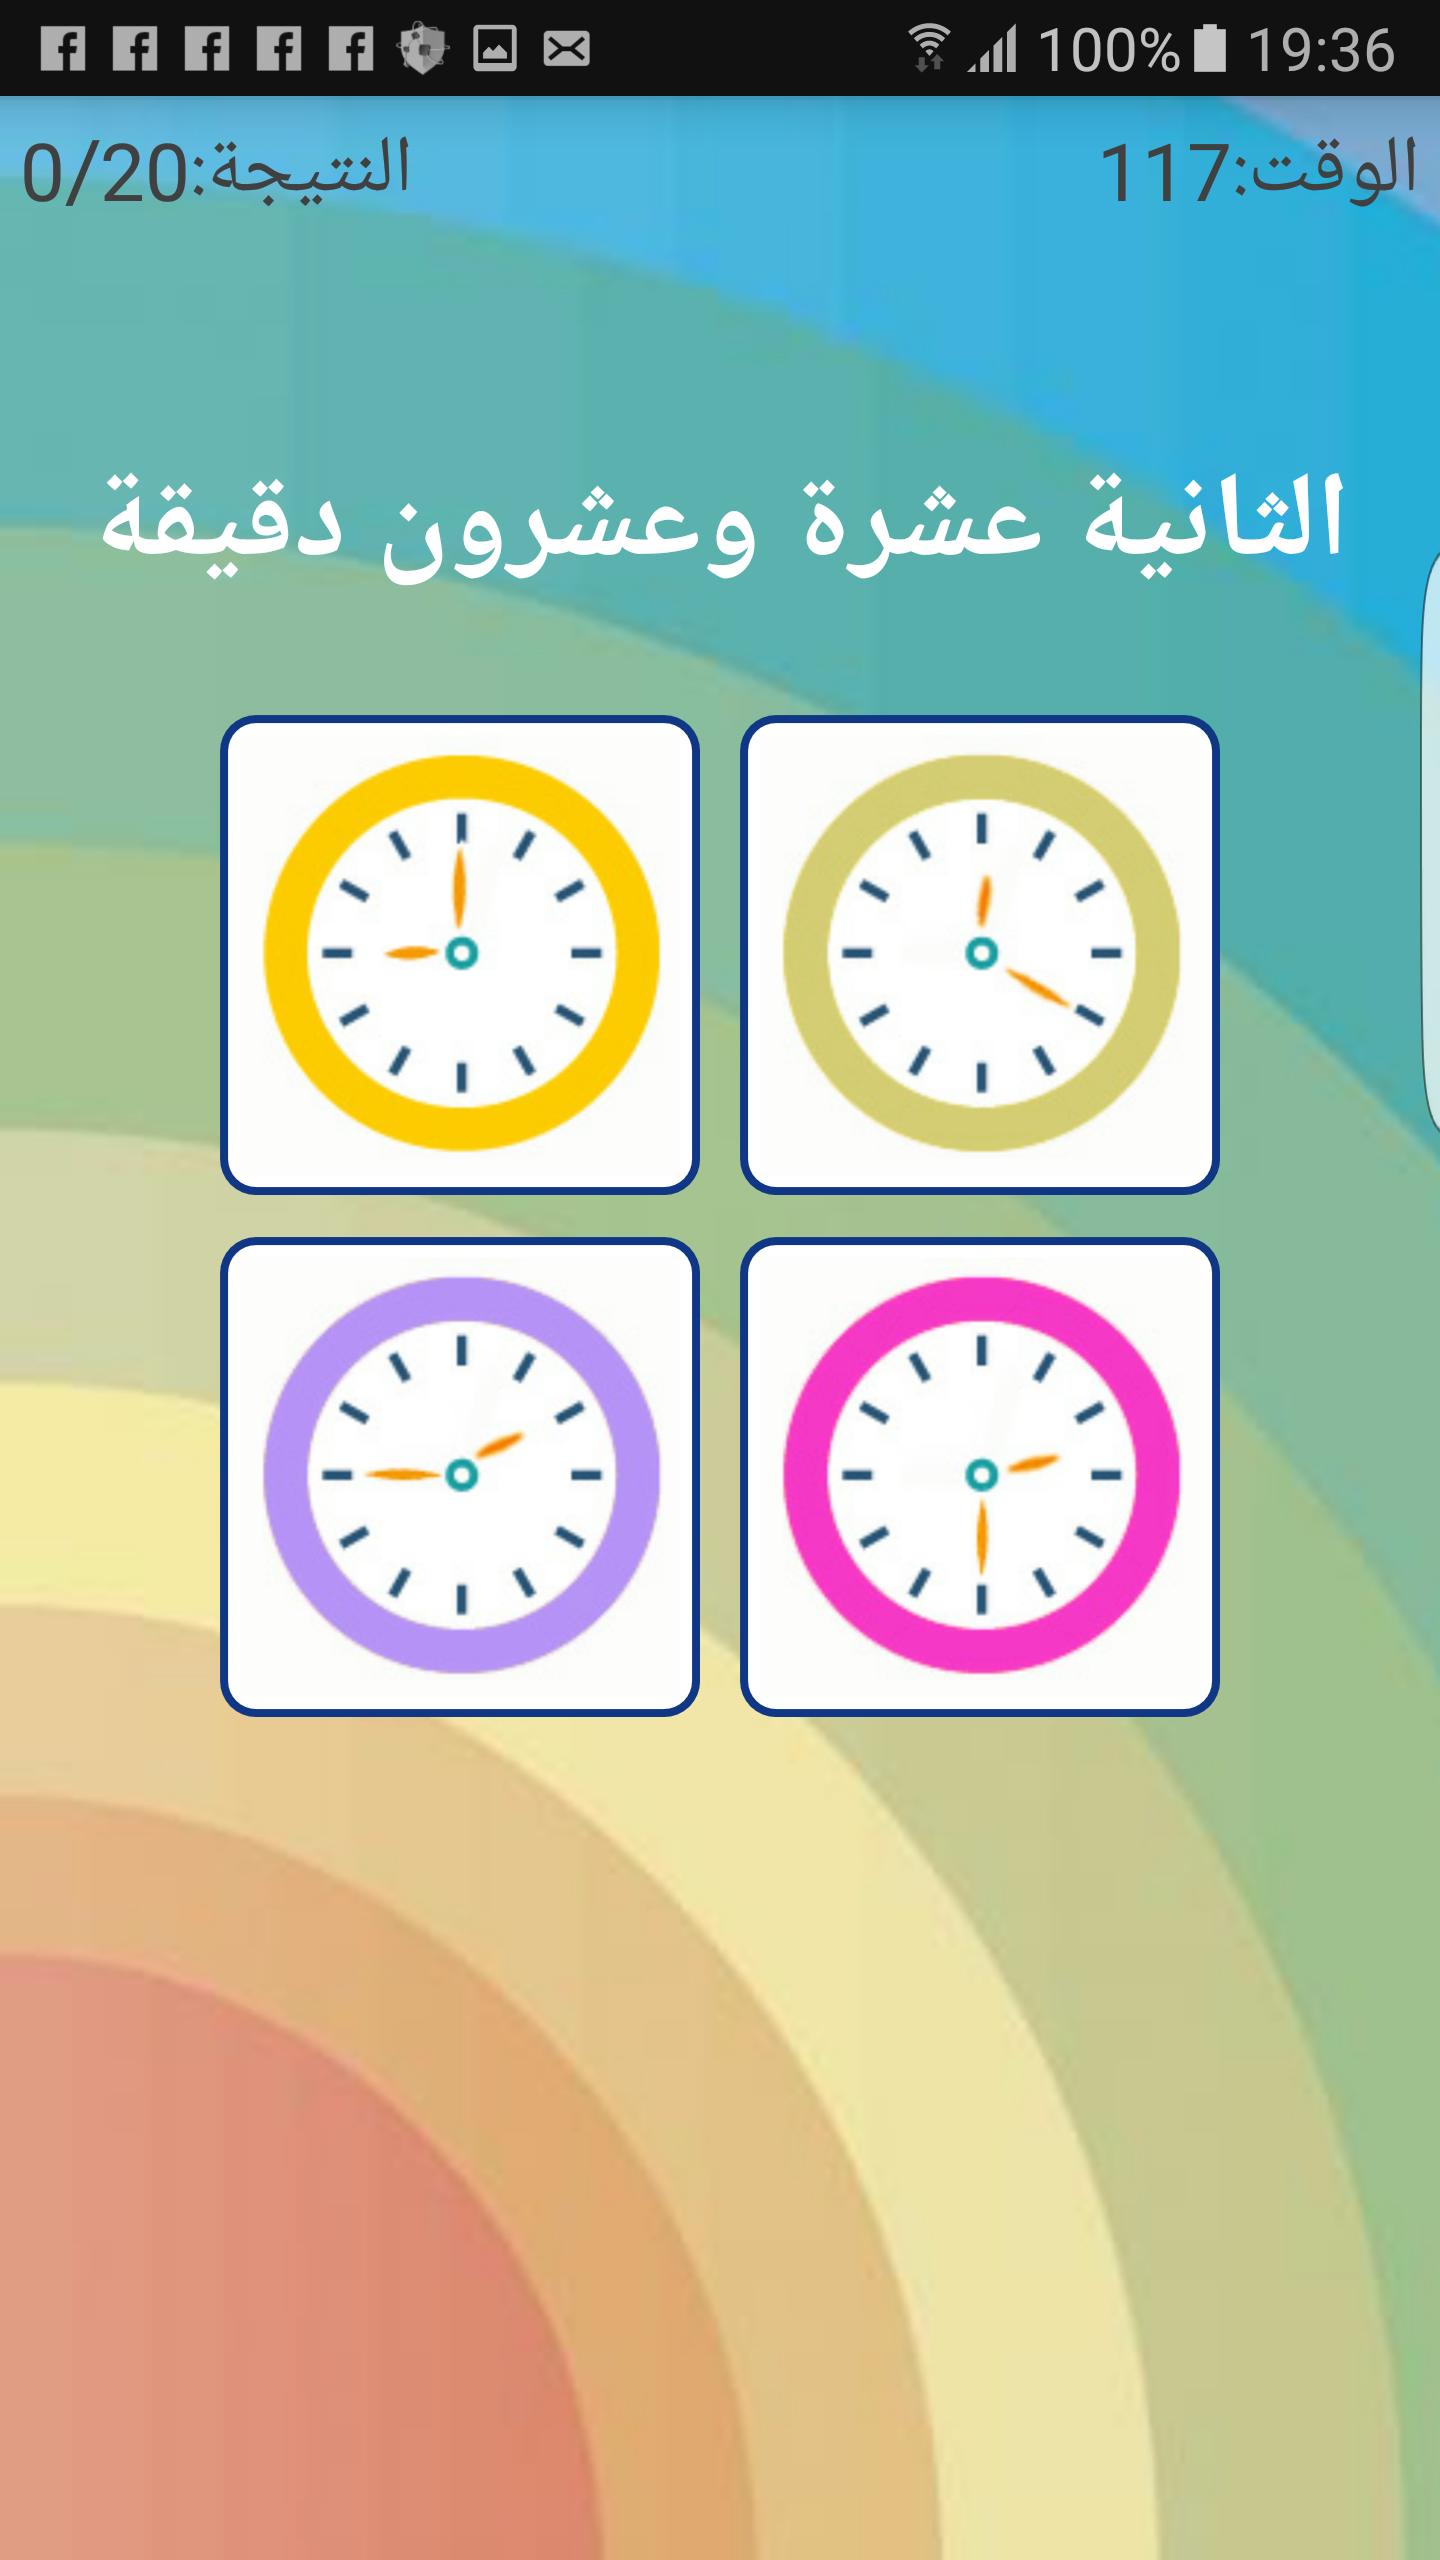 تعليم الساعة للاطفال APK Download for Android - Latest Version